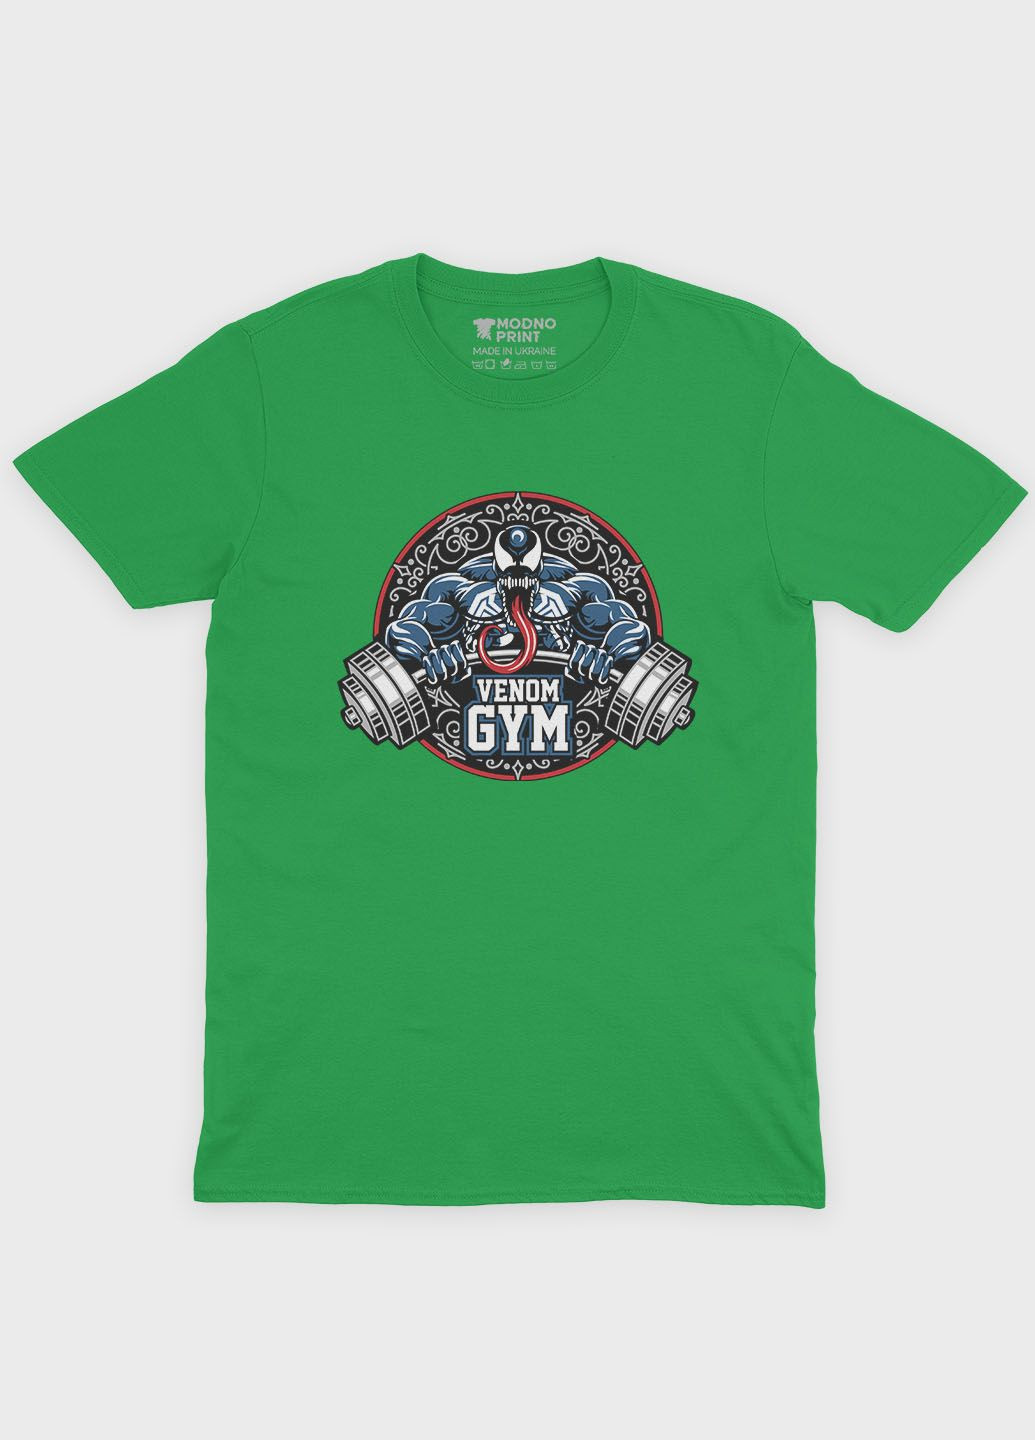 Зелена демісезонна футболка для хлопчика з принтом суперзлодія - веном (ts001-1-keg-006-013-017-b) Modno